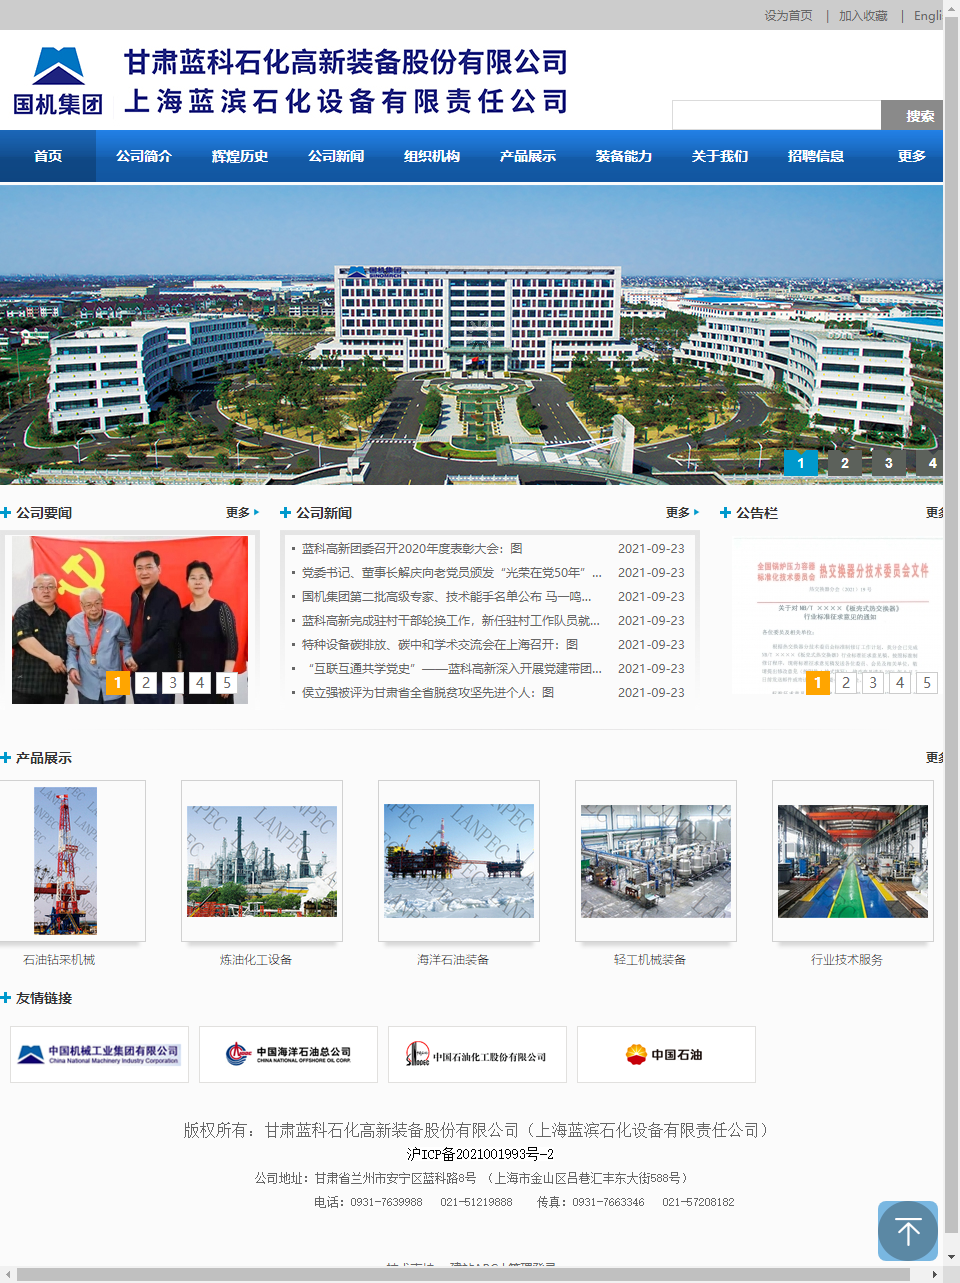 上海蓝滨石化设备有限责任公司网站案例